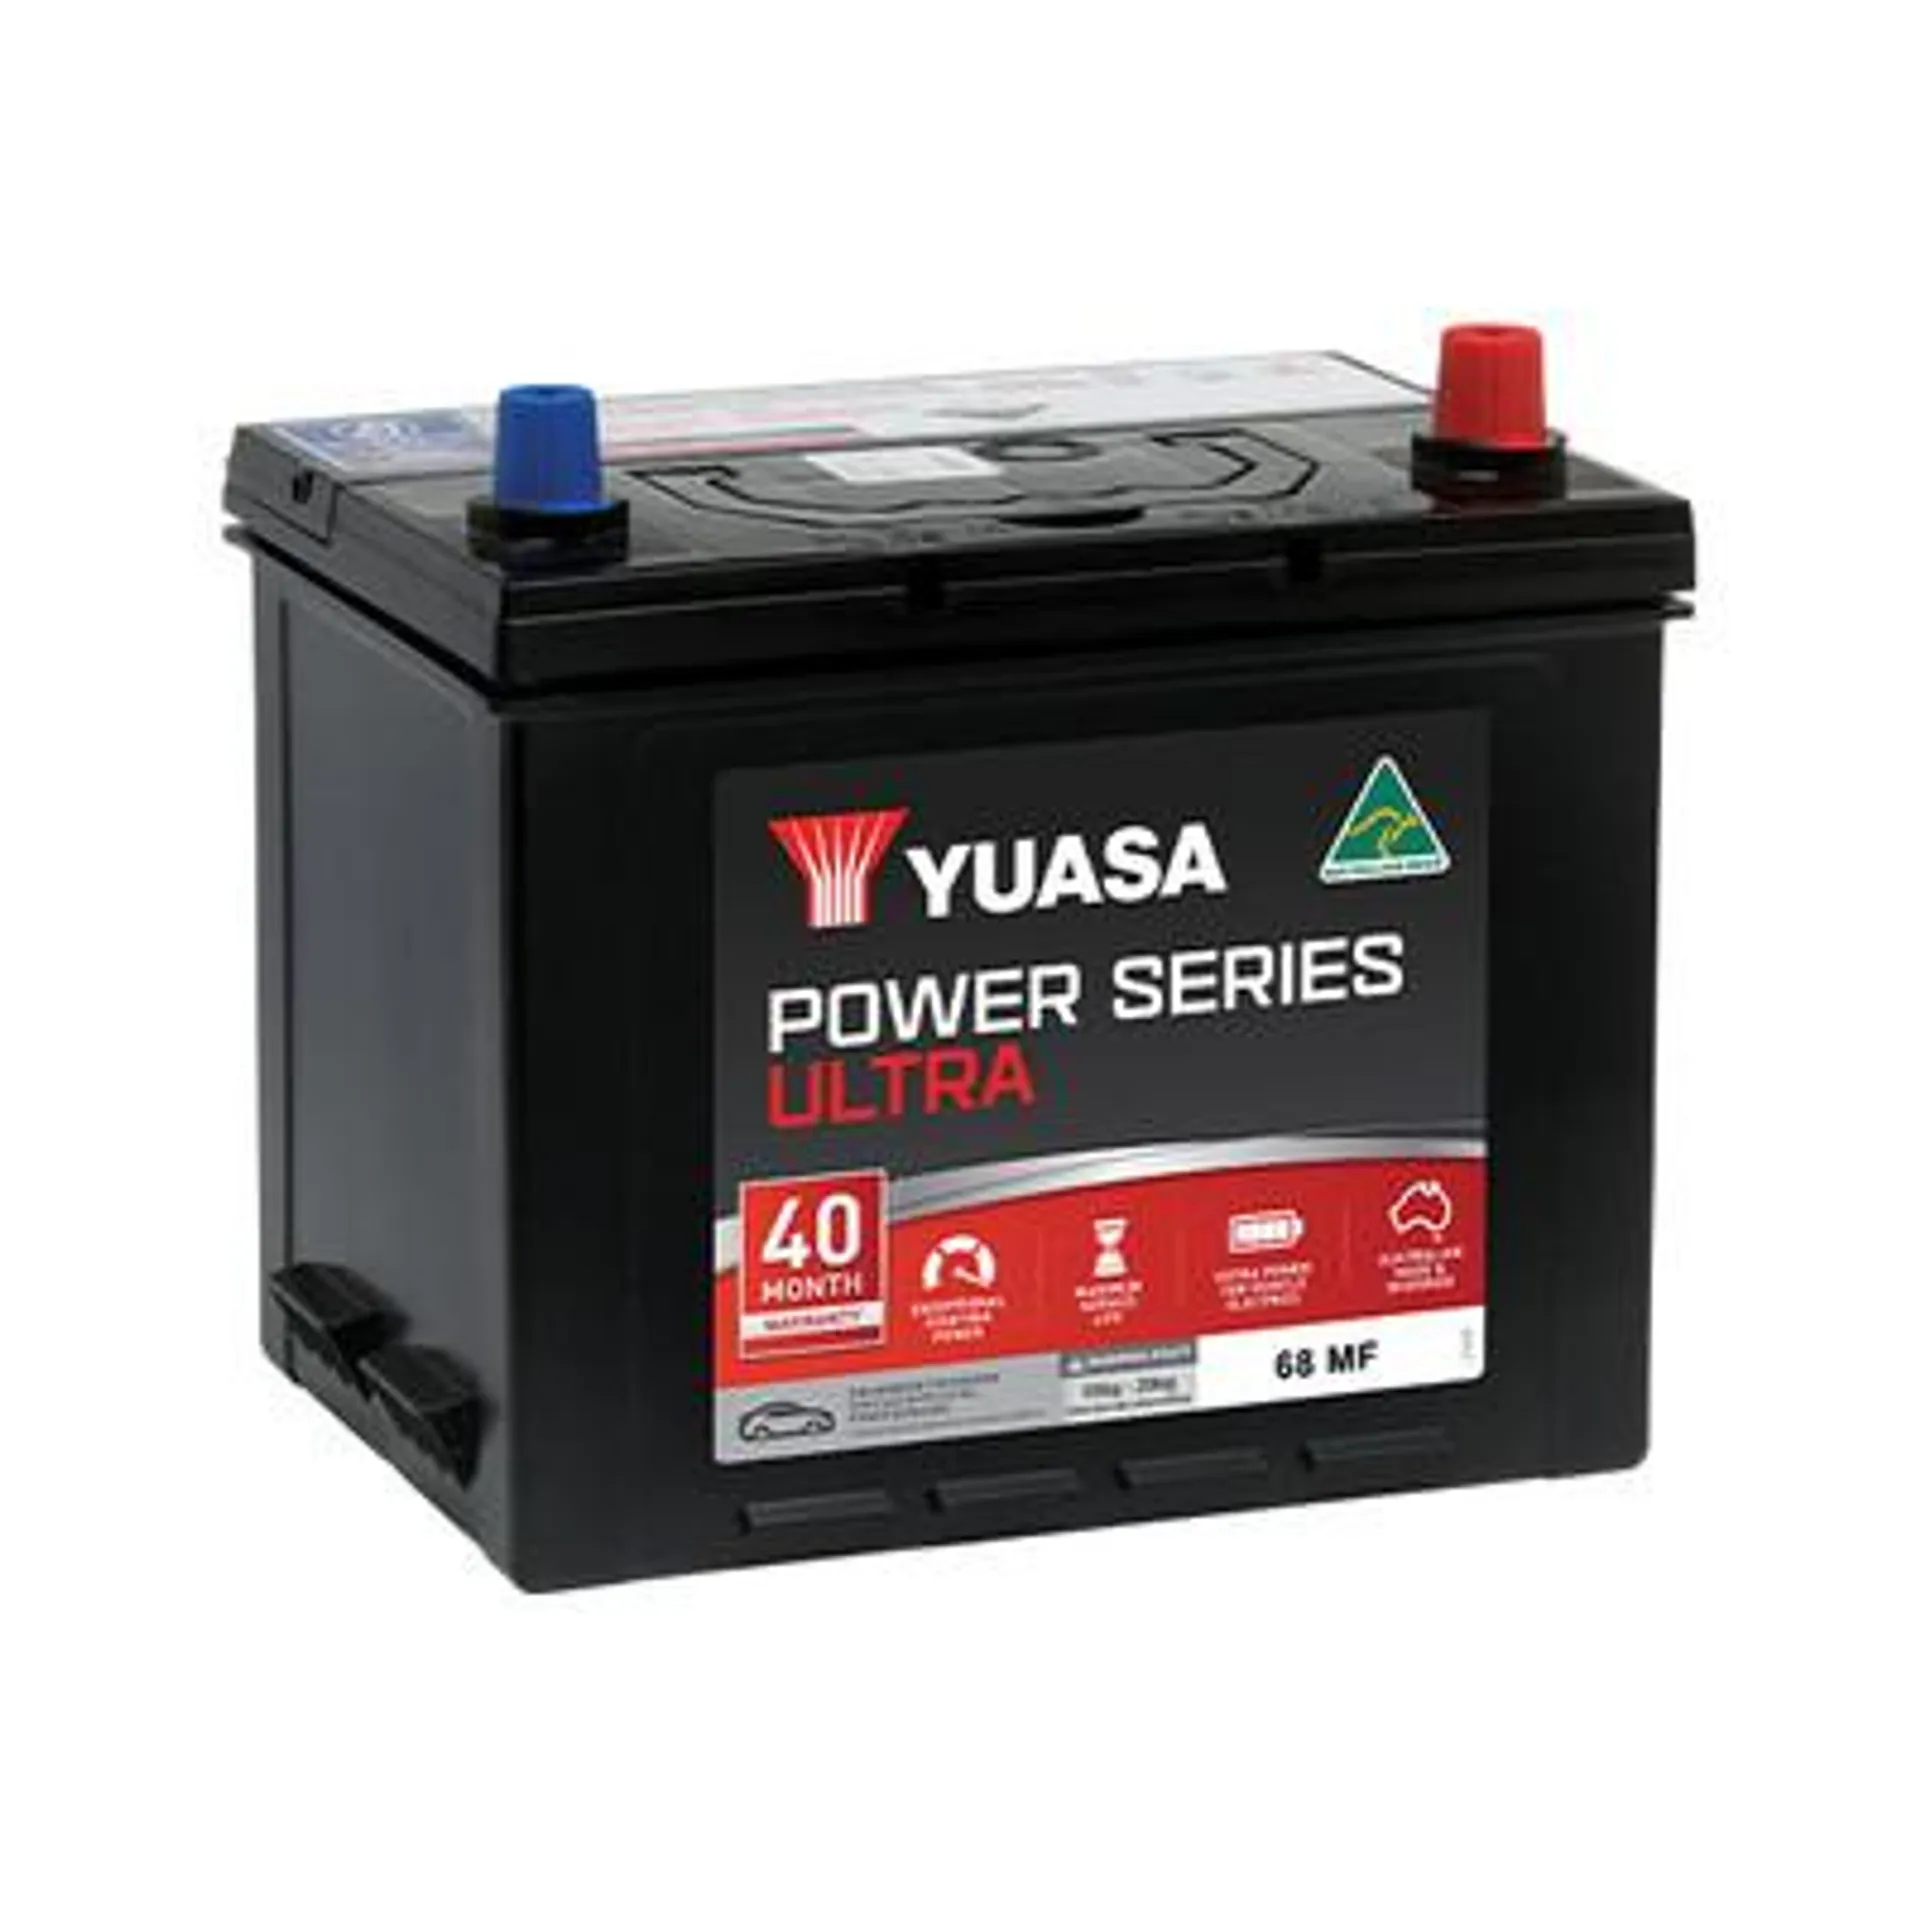 68 MF Yuasa Power Series ULTRA Auto Battery